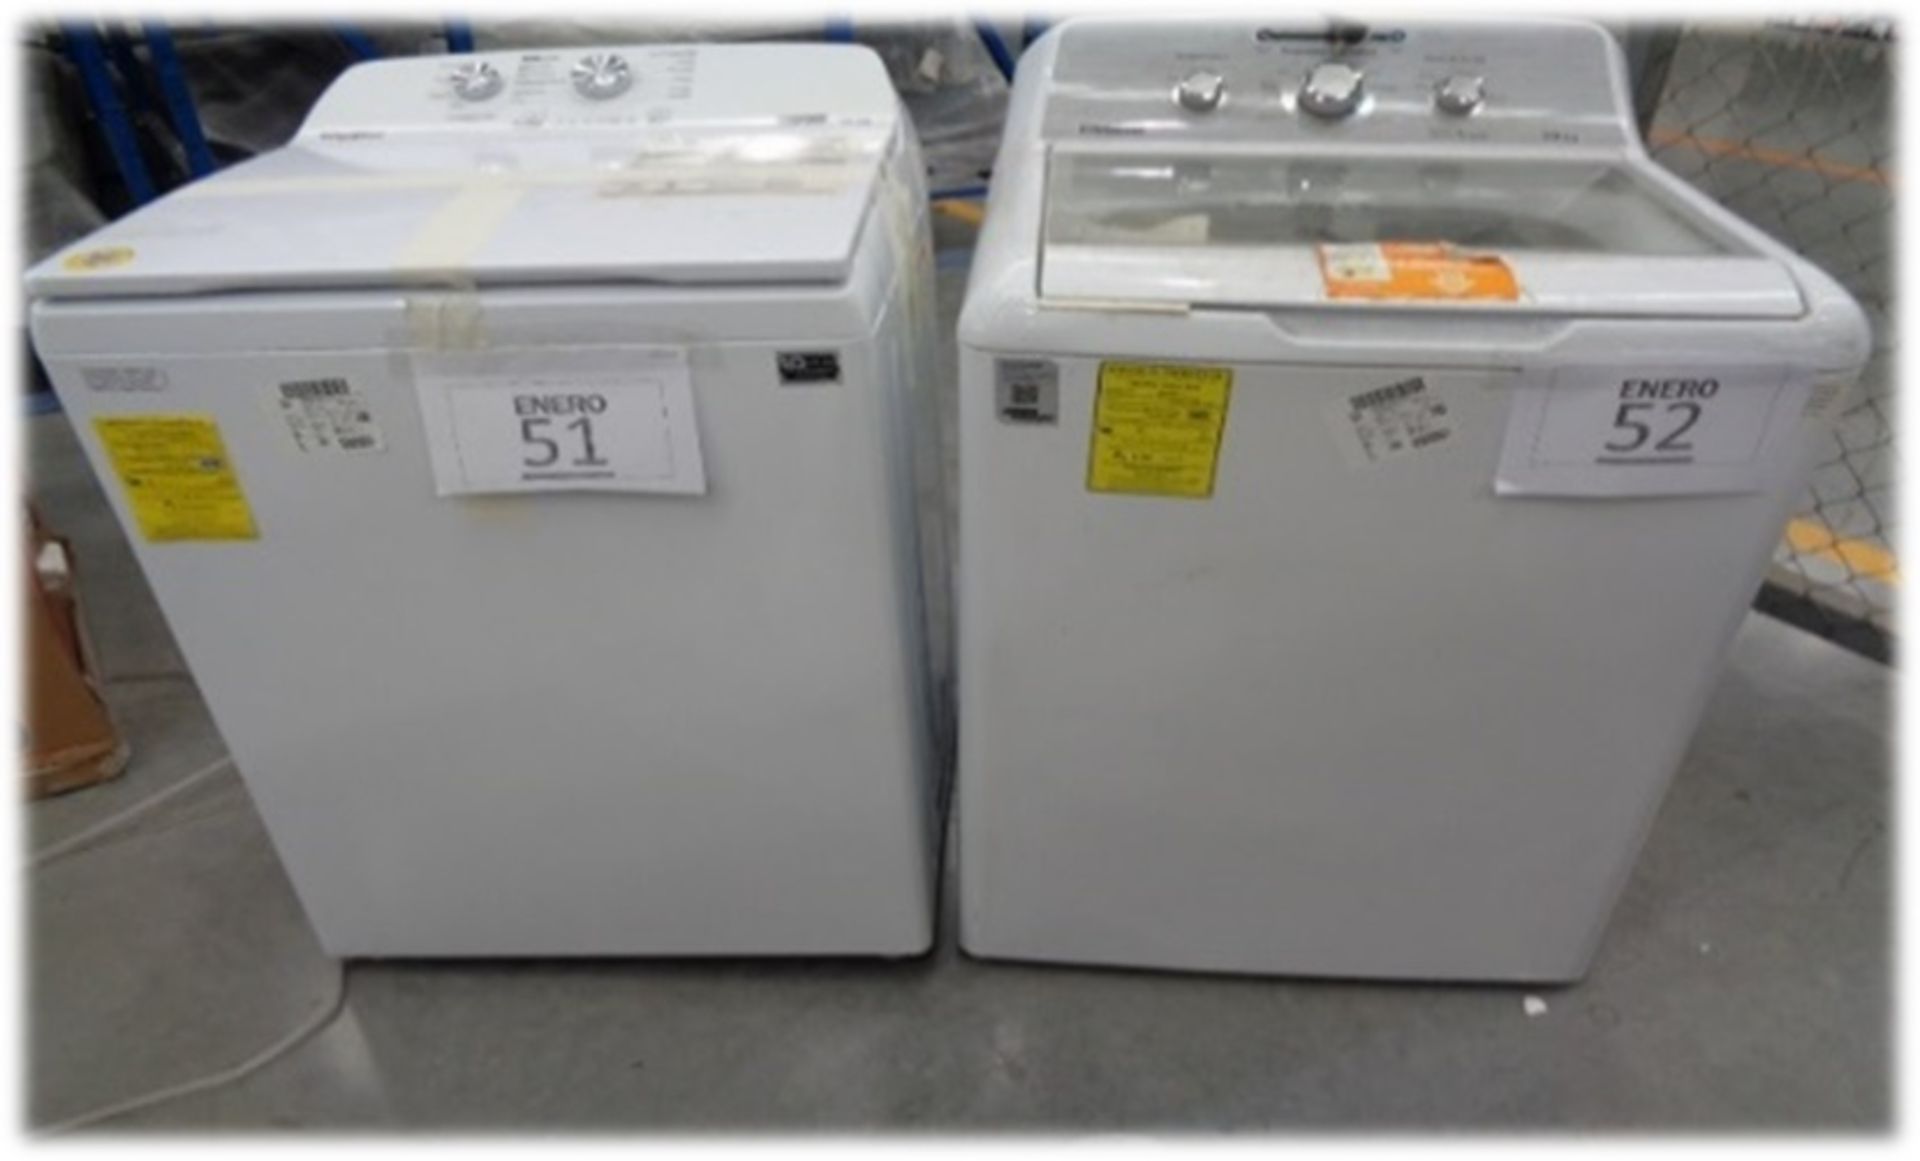 Lote conformado 1 lavadora y 1 secadora: LAVADORA CARGA SUP 23KG Y SECADORA 25KG